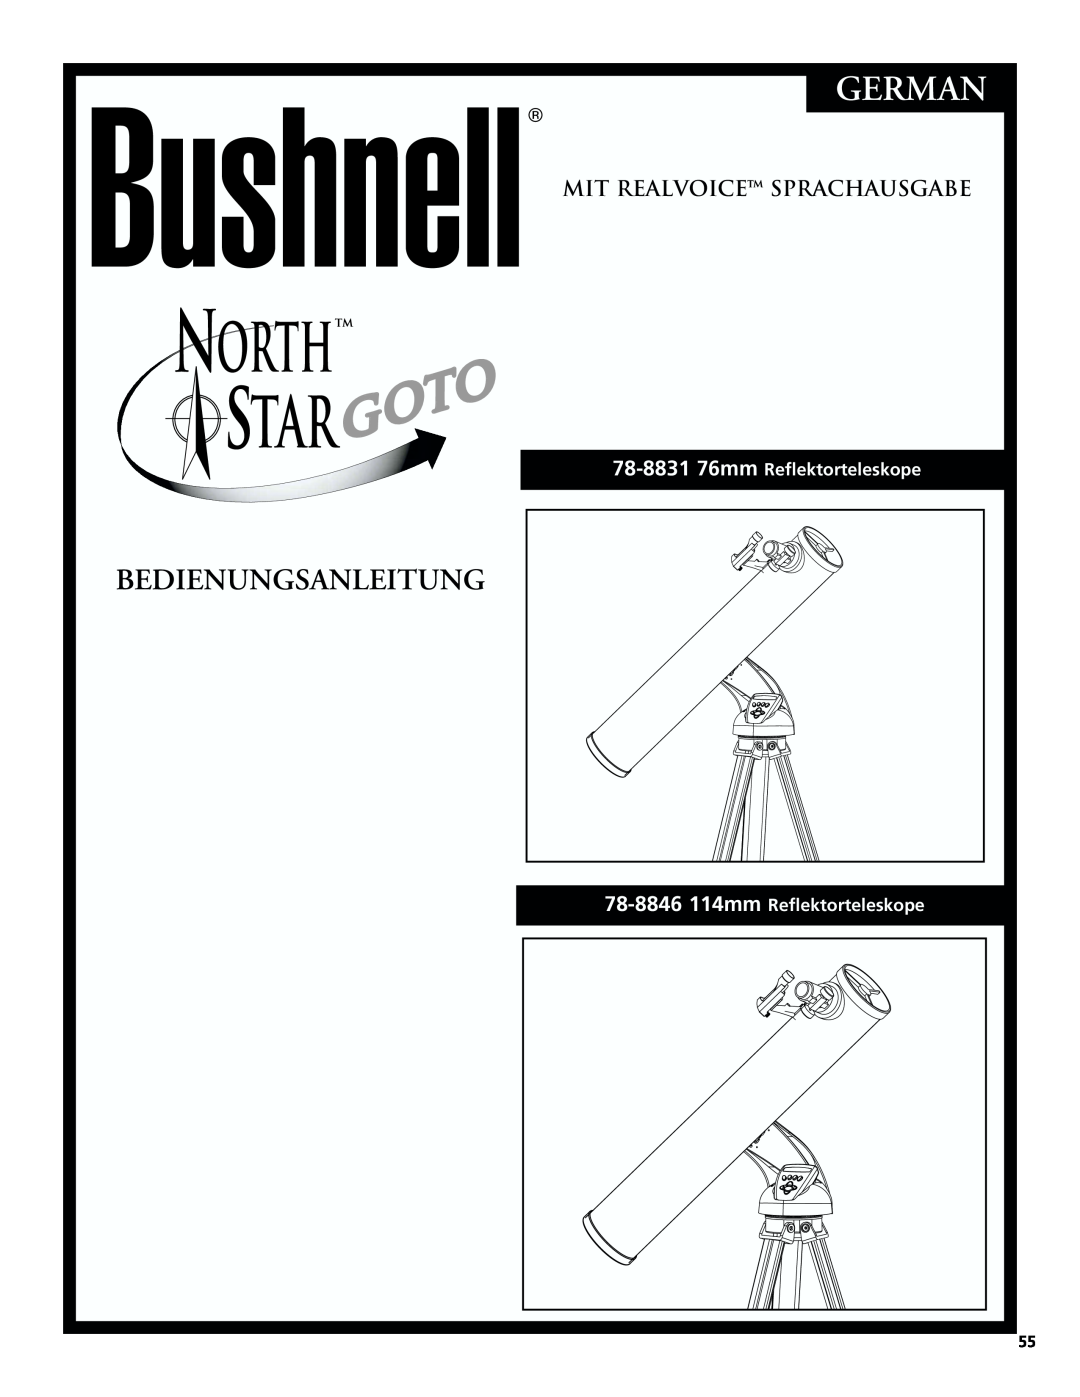 Bushnell 78-8831, 78-8846 German, Mit Realvoice Sprachausgabe, 78-8846114mm Reflektorteleskope, Bedienungsanleitung 